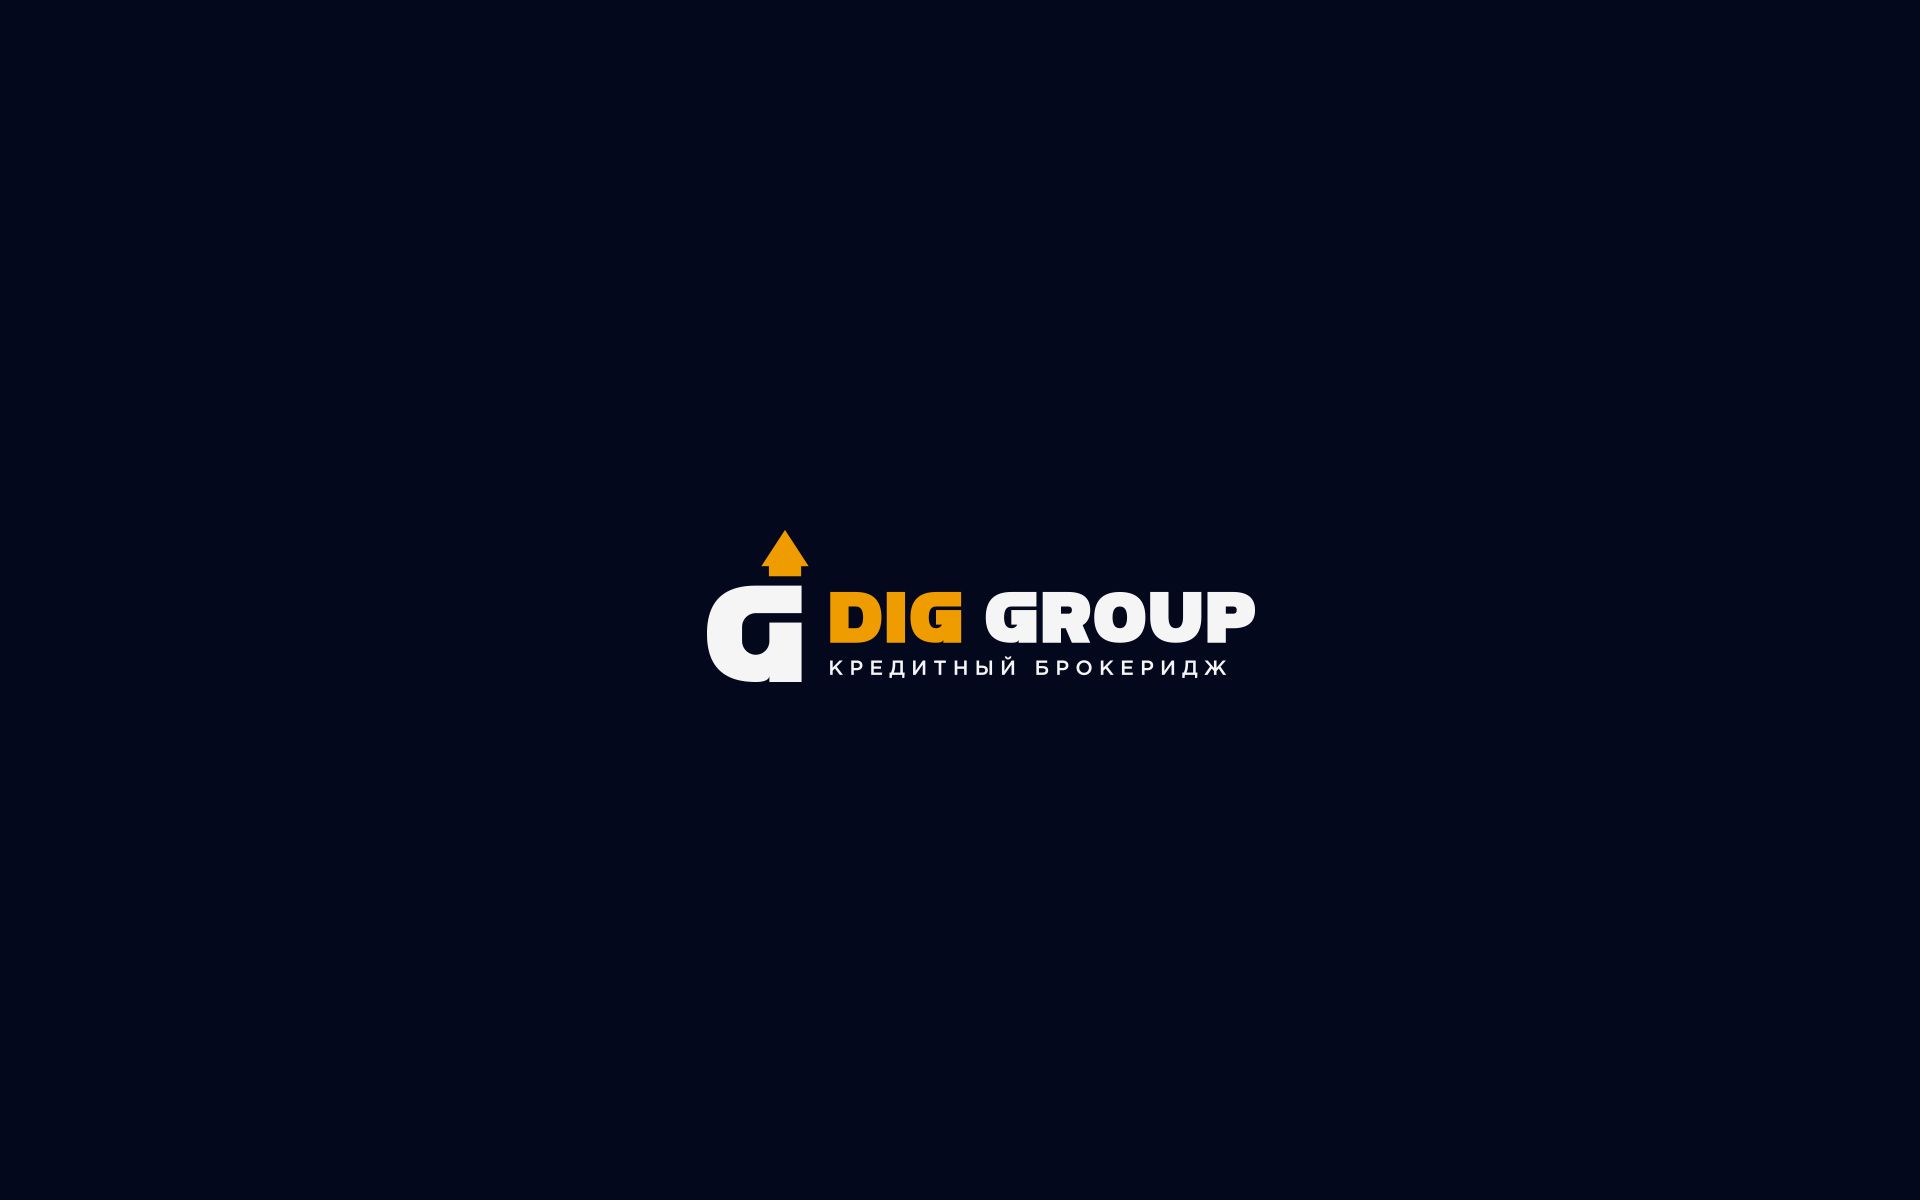 Логотип для финансового брокера ДИГ - дизайнер U4po4mak